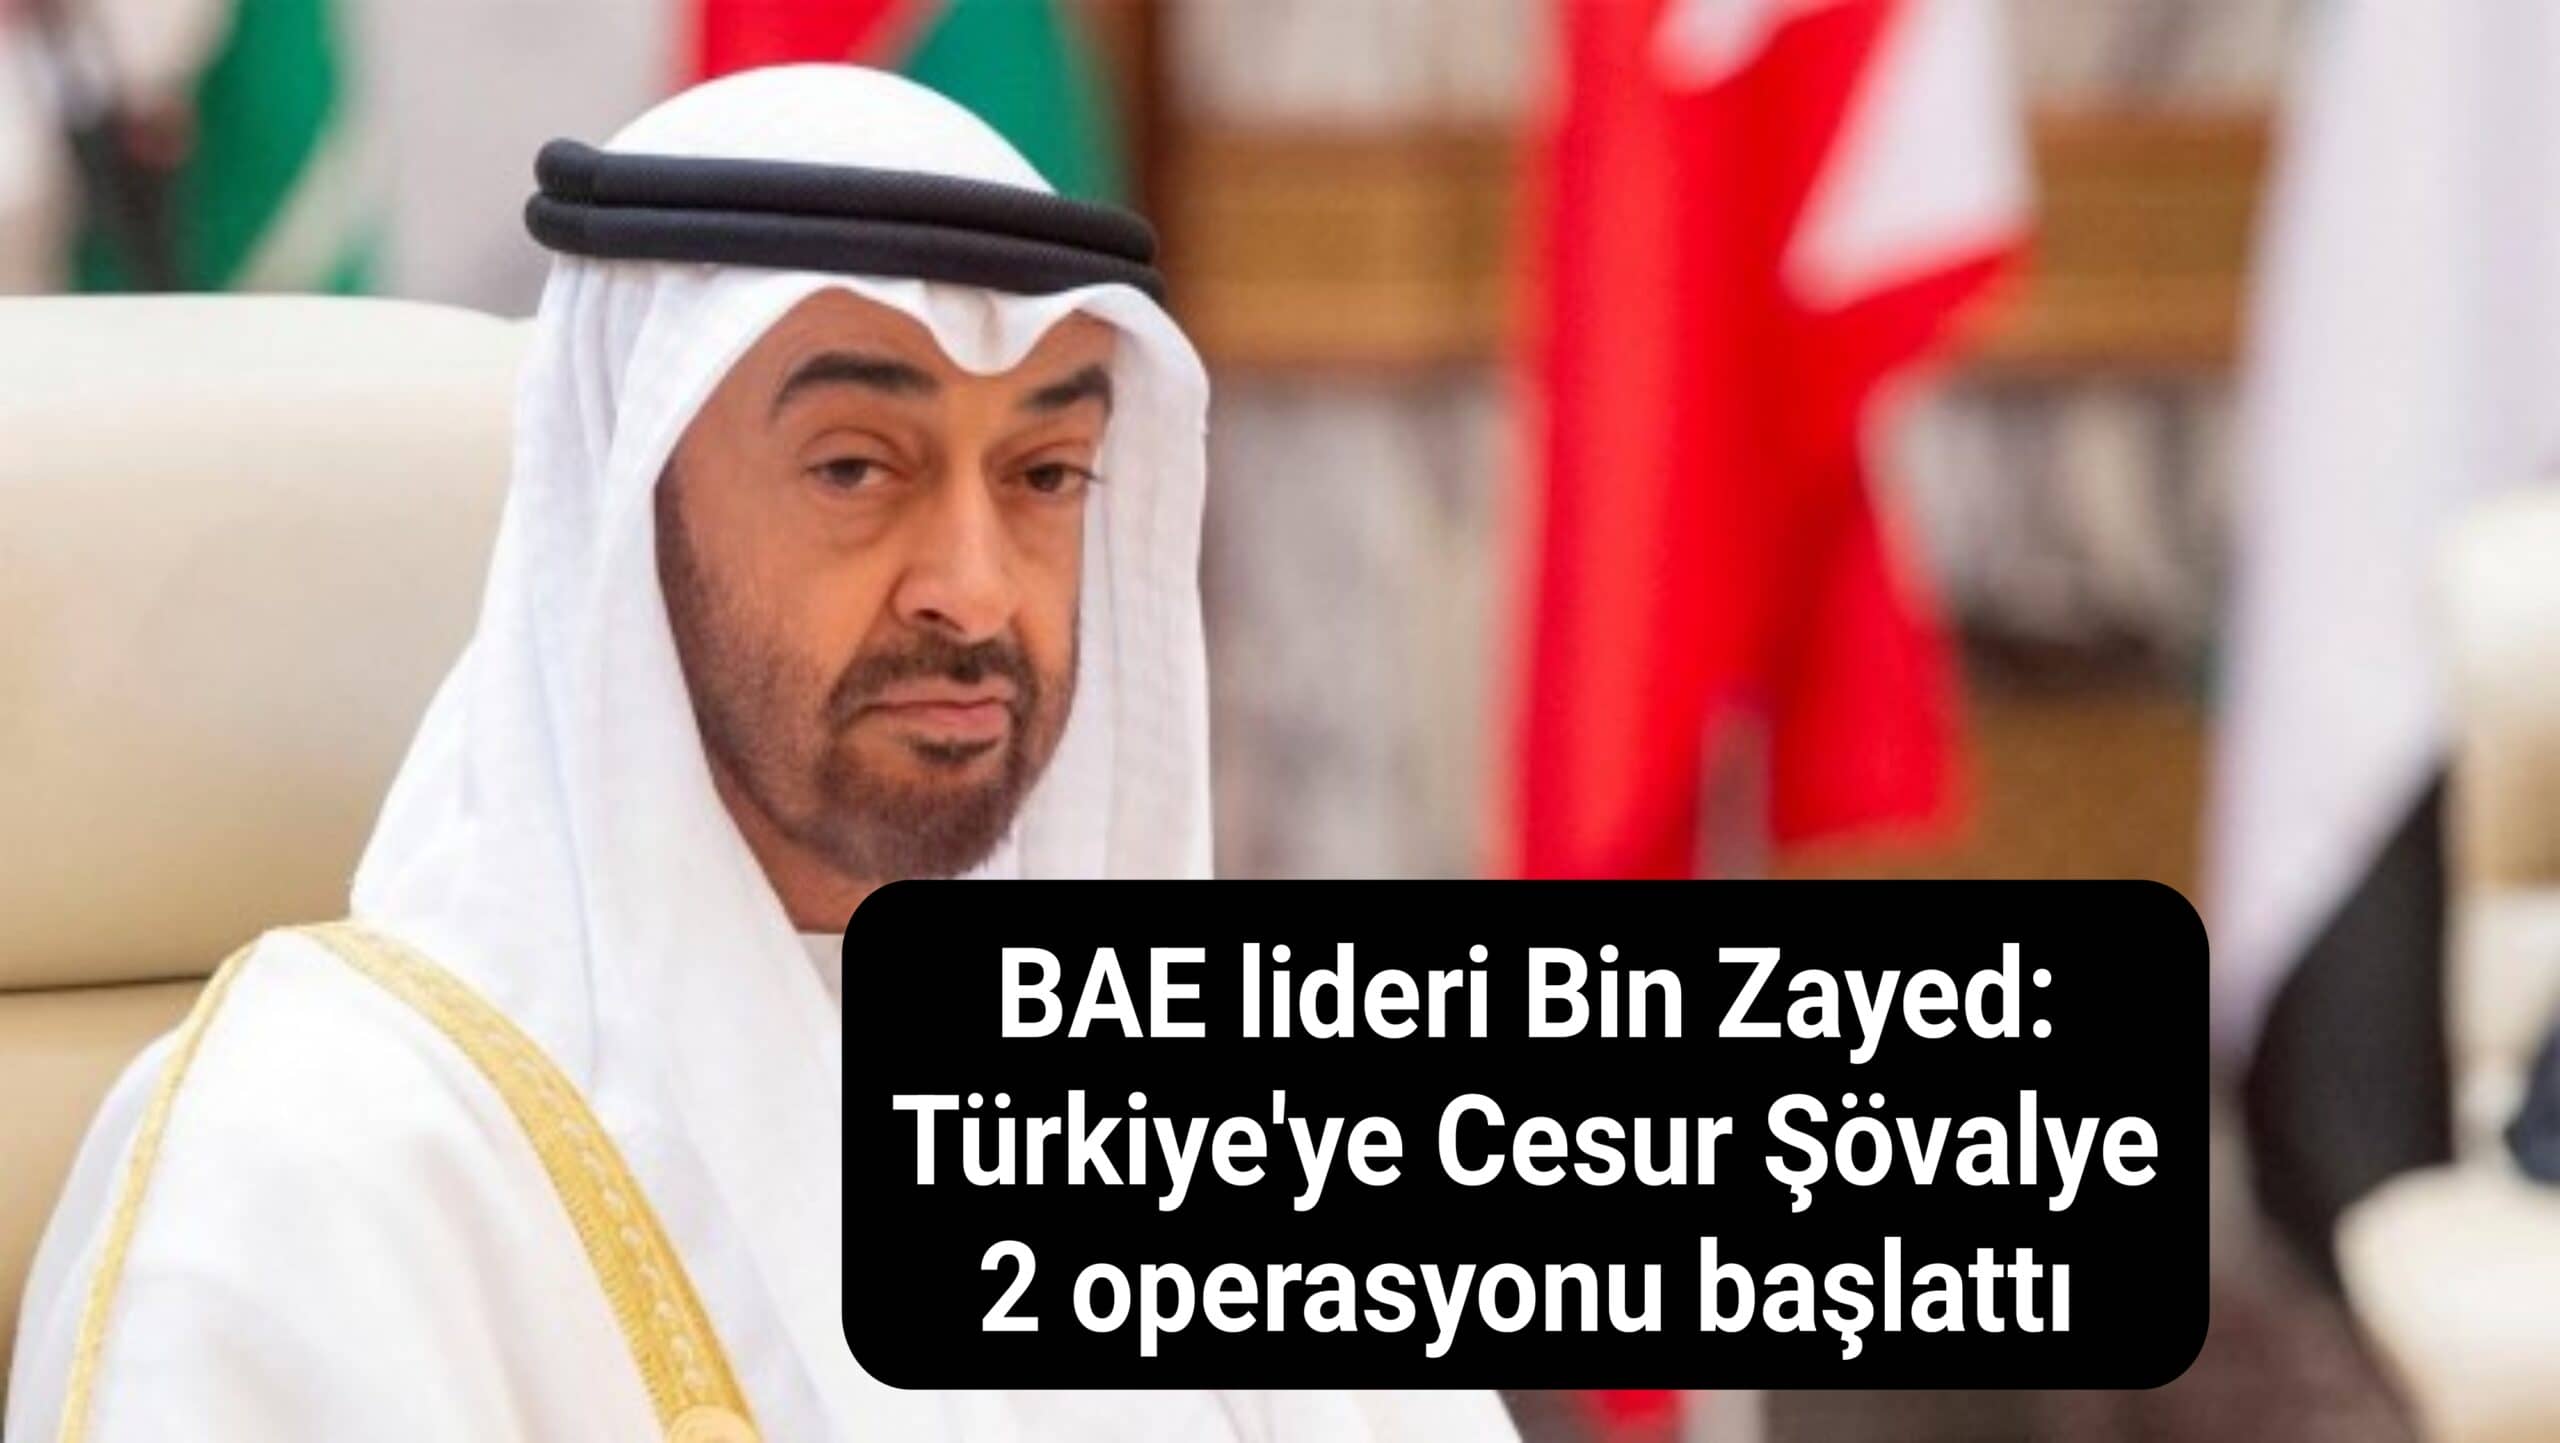 BAE lideri Bin Zayed: Türkiye'ye Cesur Şövalye 2 operasyonu başlattı